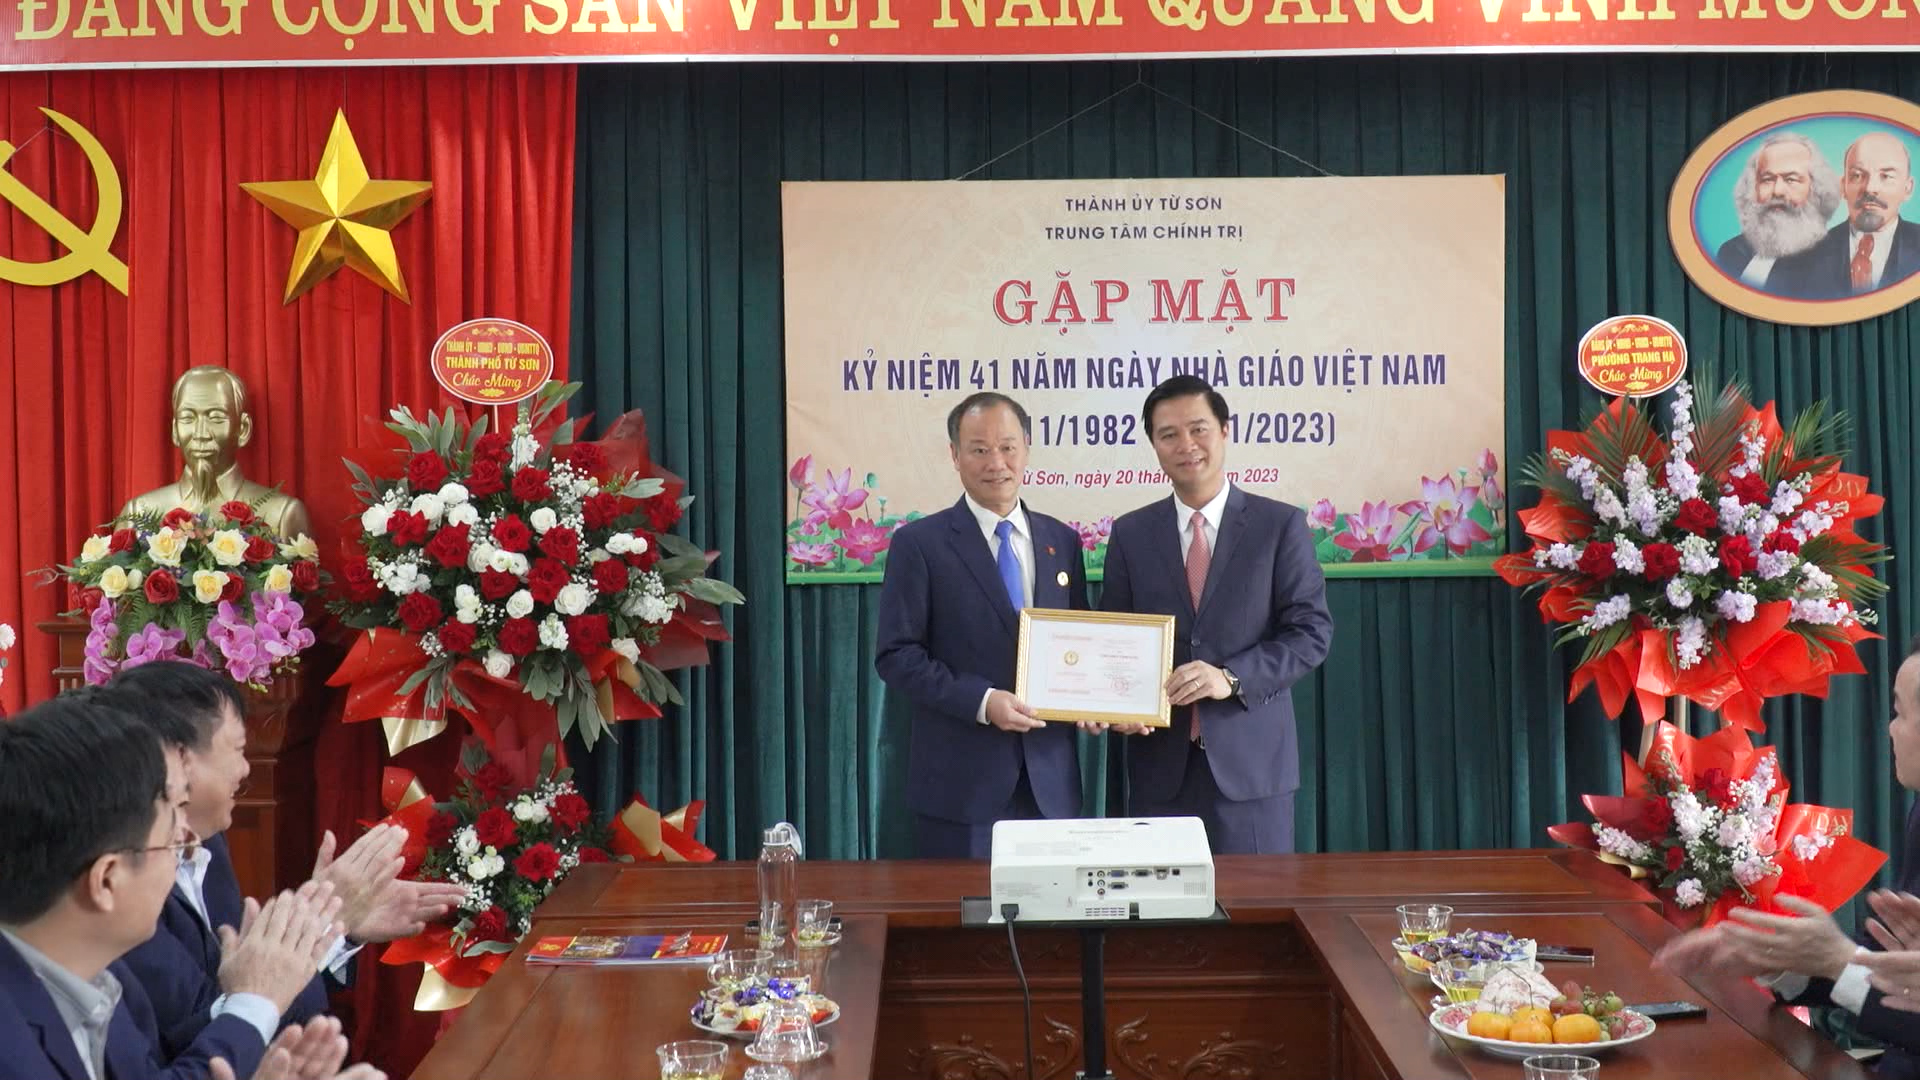 Trung tâm Chính trị Thành phố gặp mặt kỷ niệm 41 năm ngày Nhà giáo Việt Nam 20/11/2023